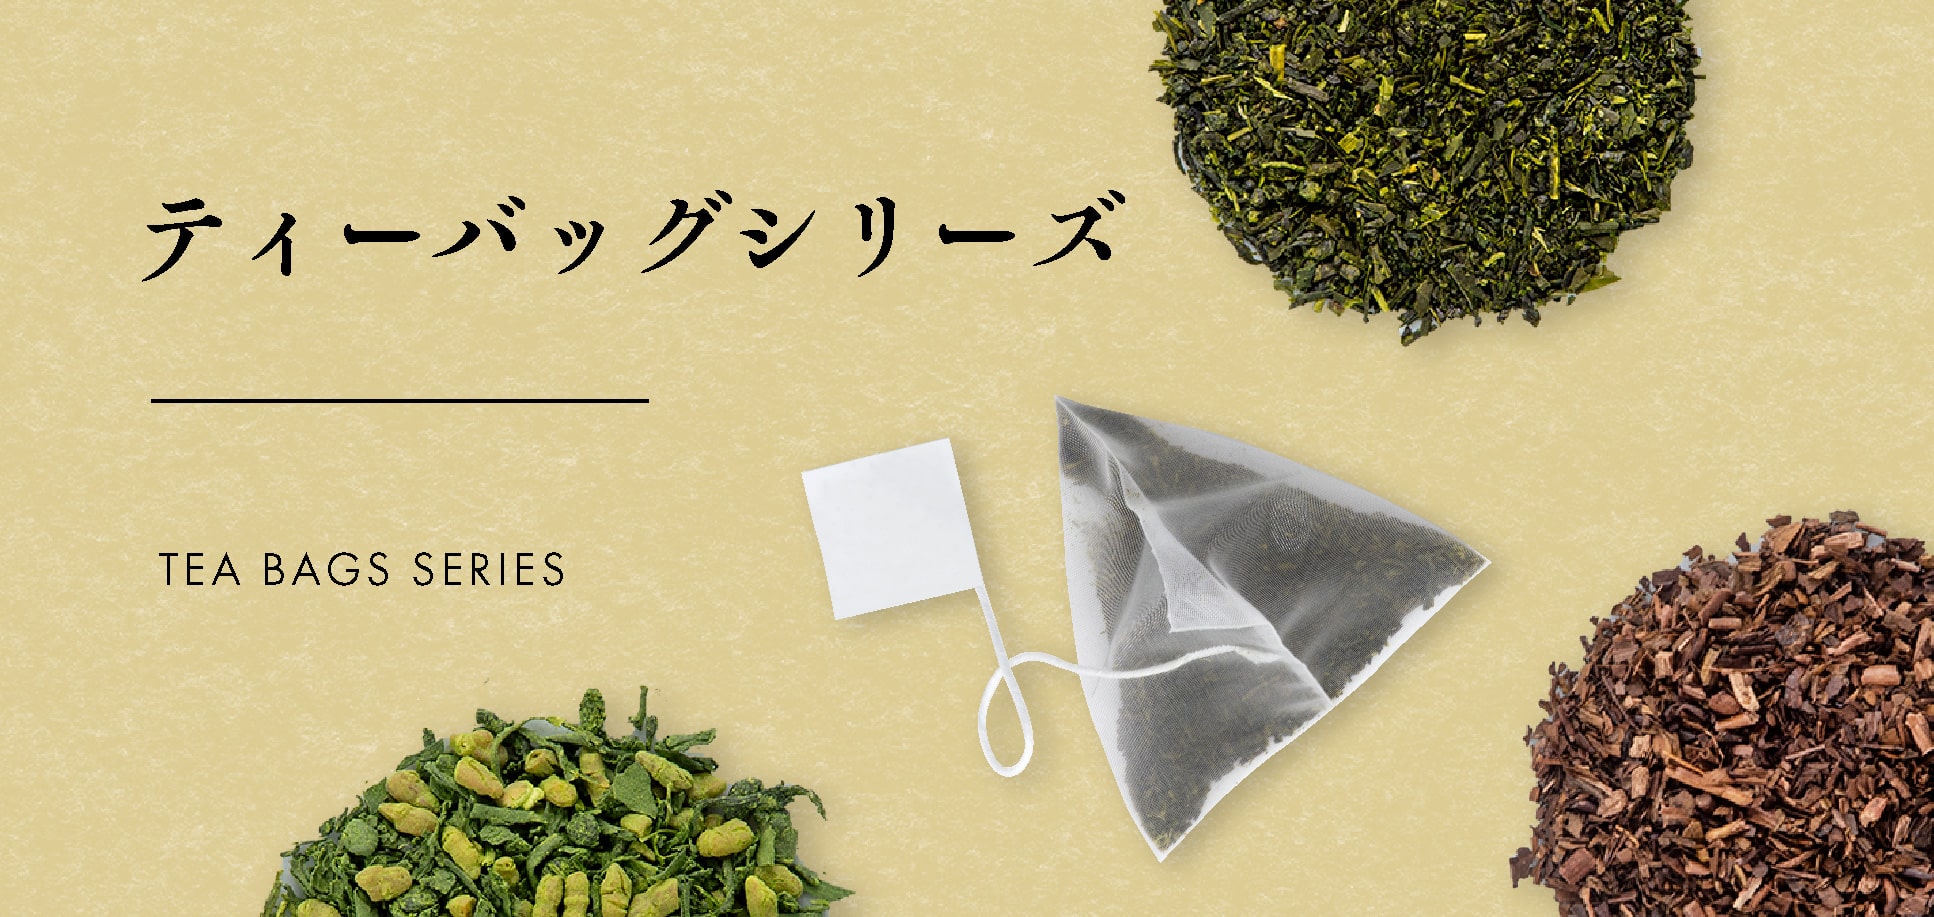 【かねじょう・茶の庭】お茶・ハーブティー・紅茶・玄米茶のティーバッグ